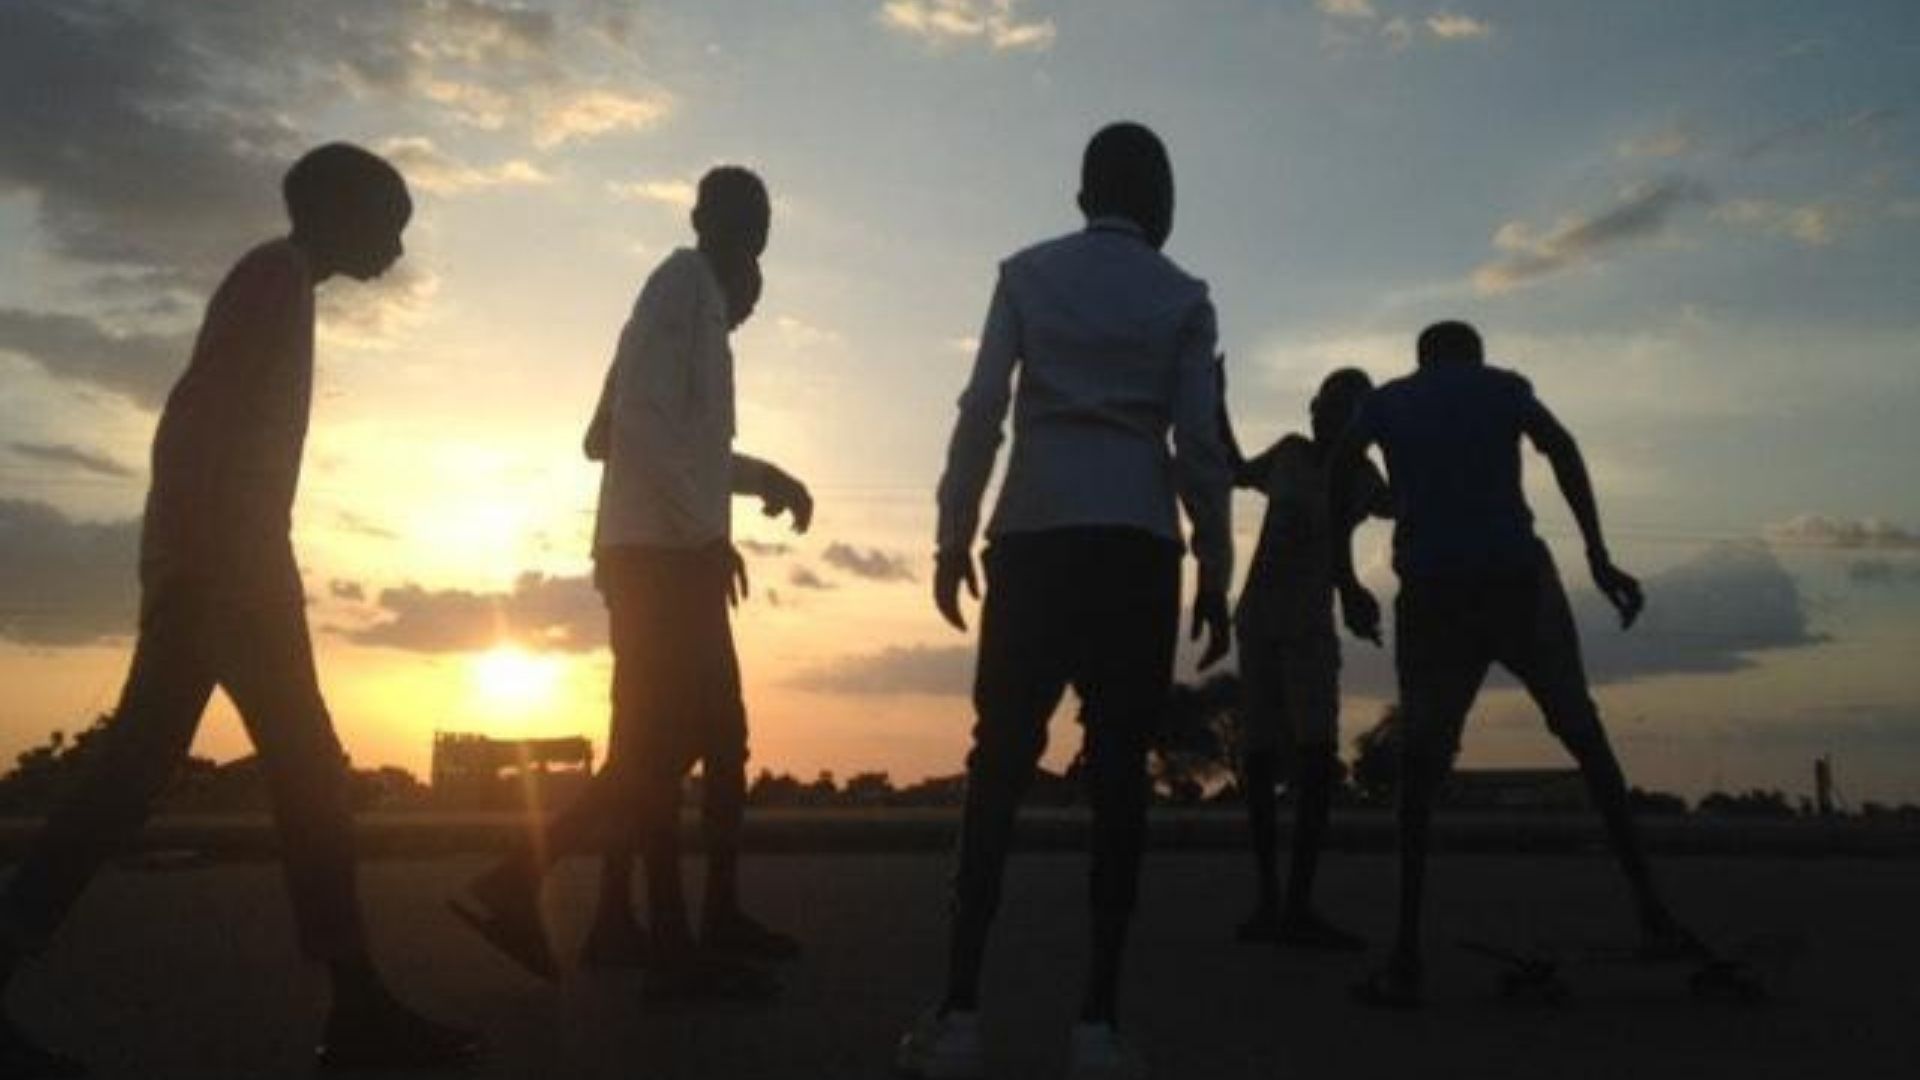 BackSide Skate Magazine. Spotcheck. South Sudan. Skate to Recovery.